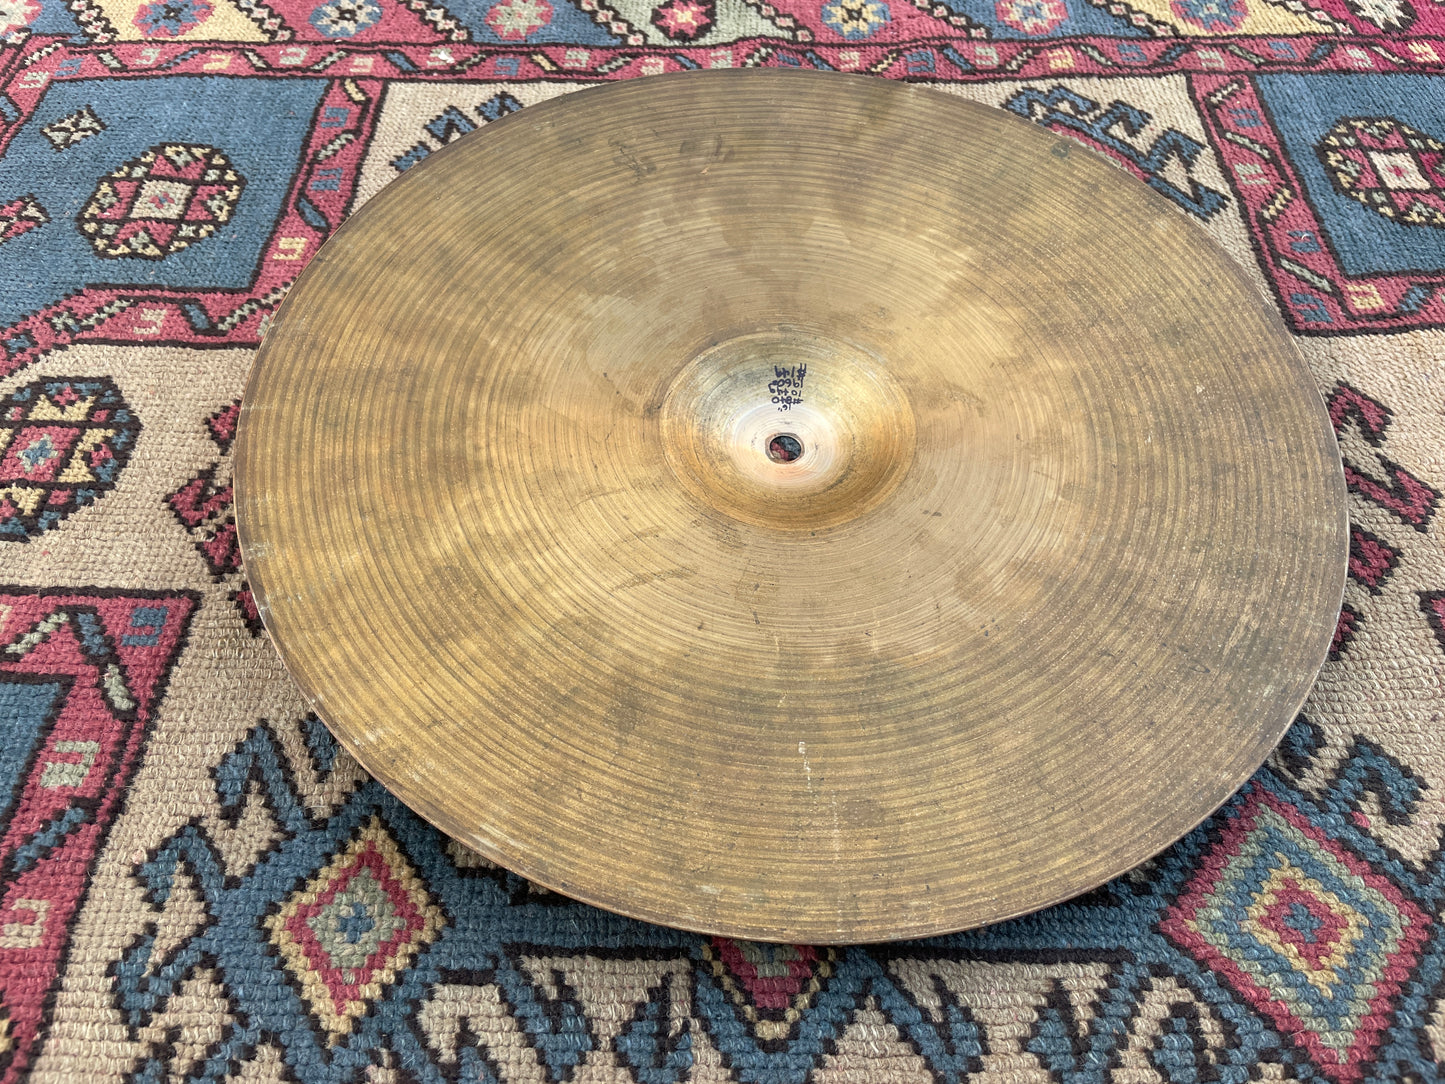 16" Zildjian A 1960s Crash Cymbal 1044g #840